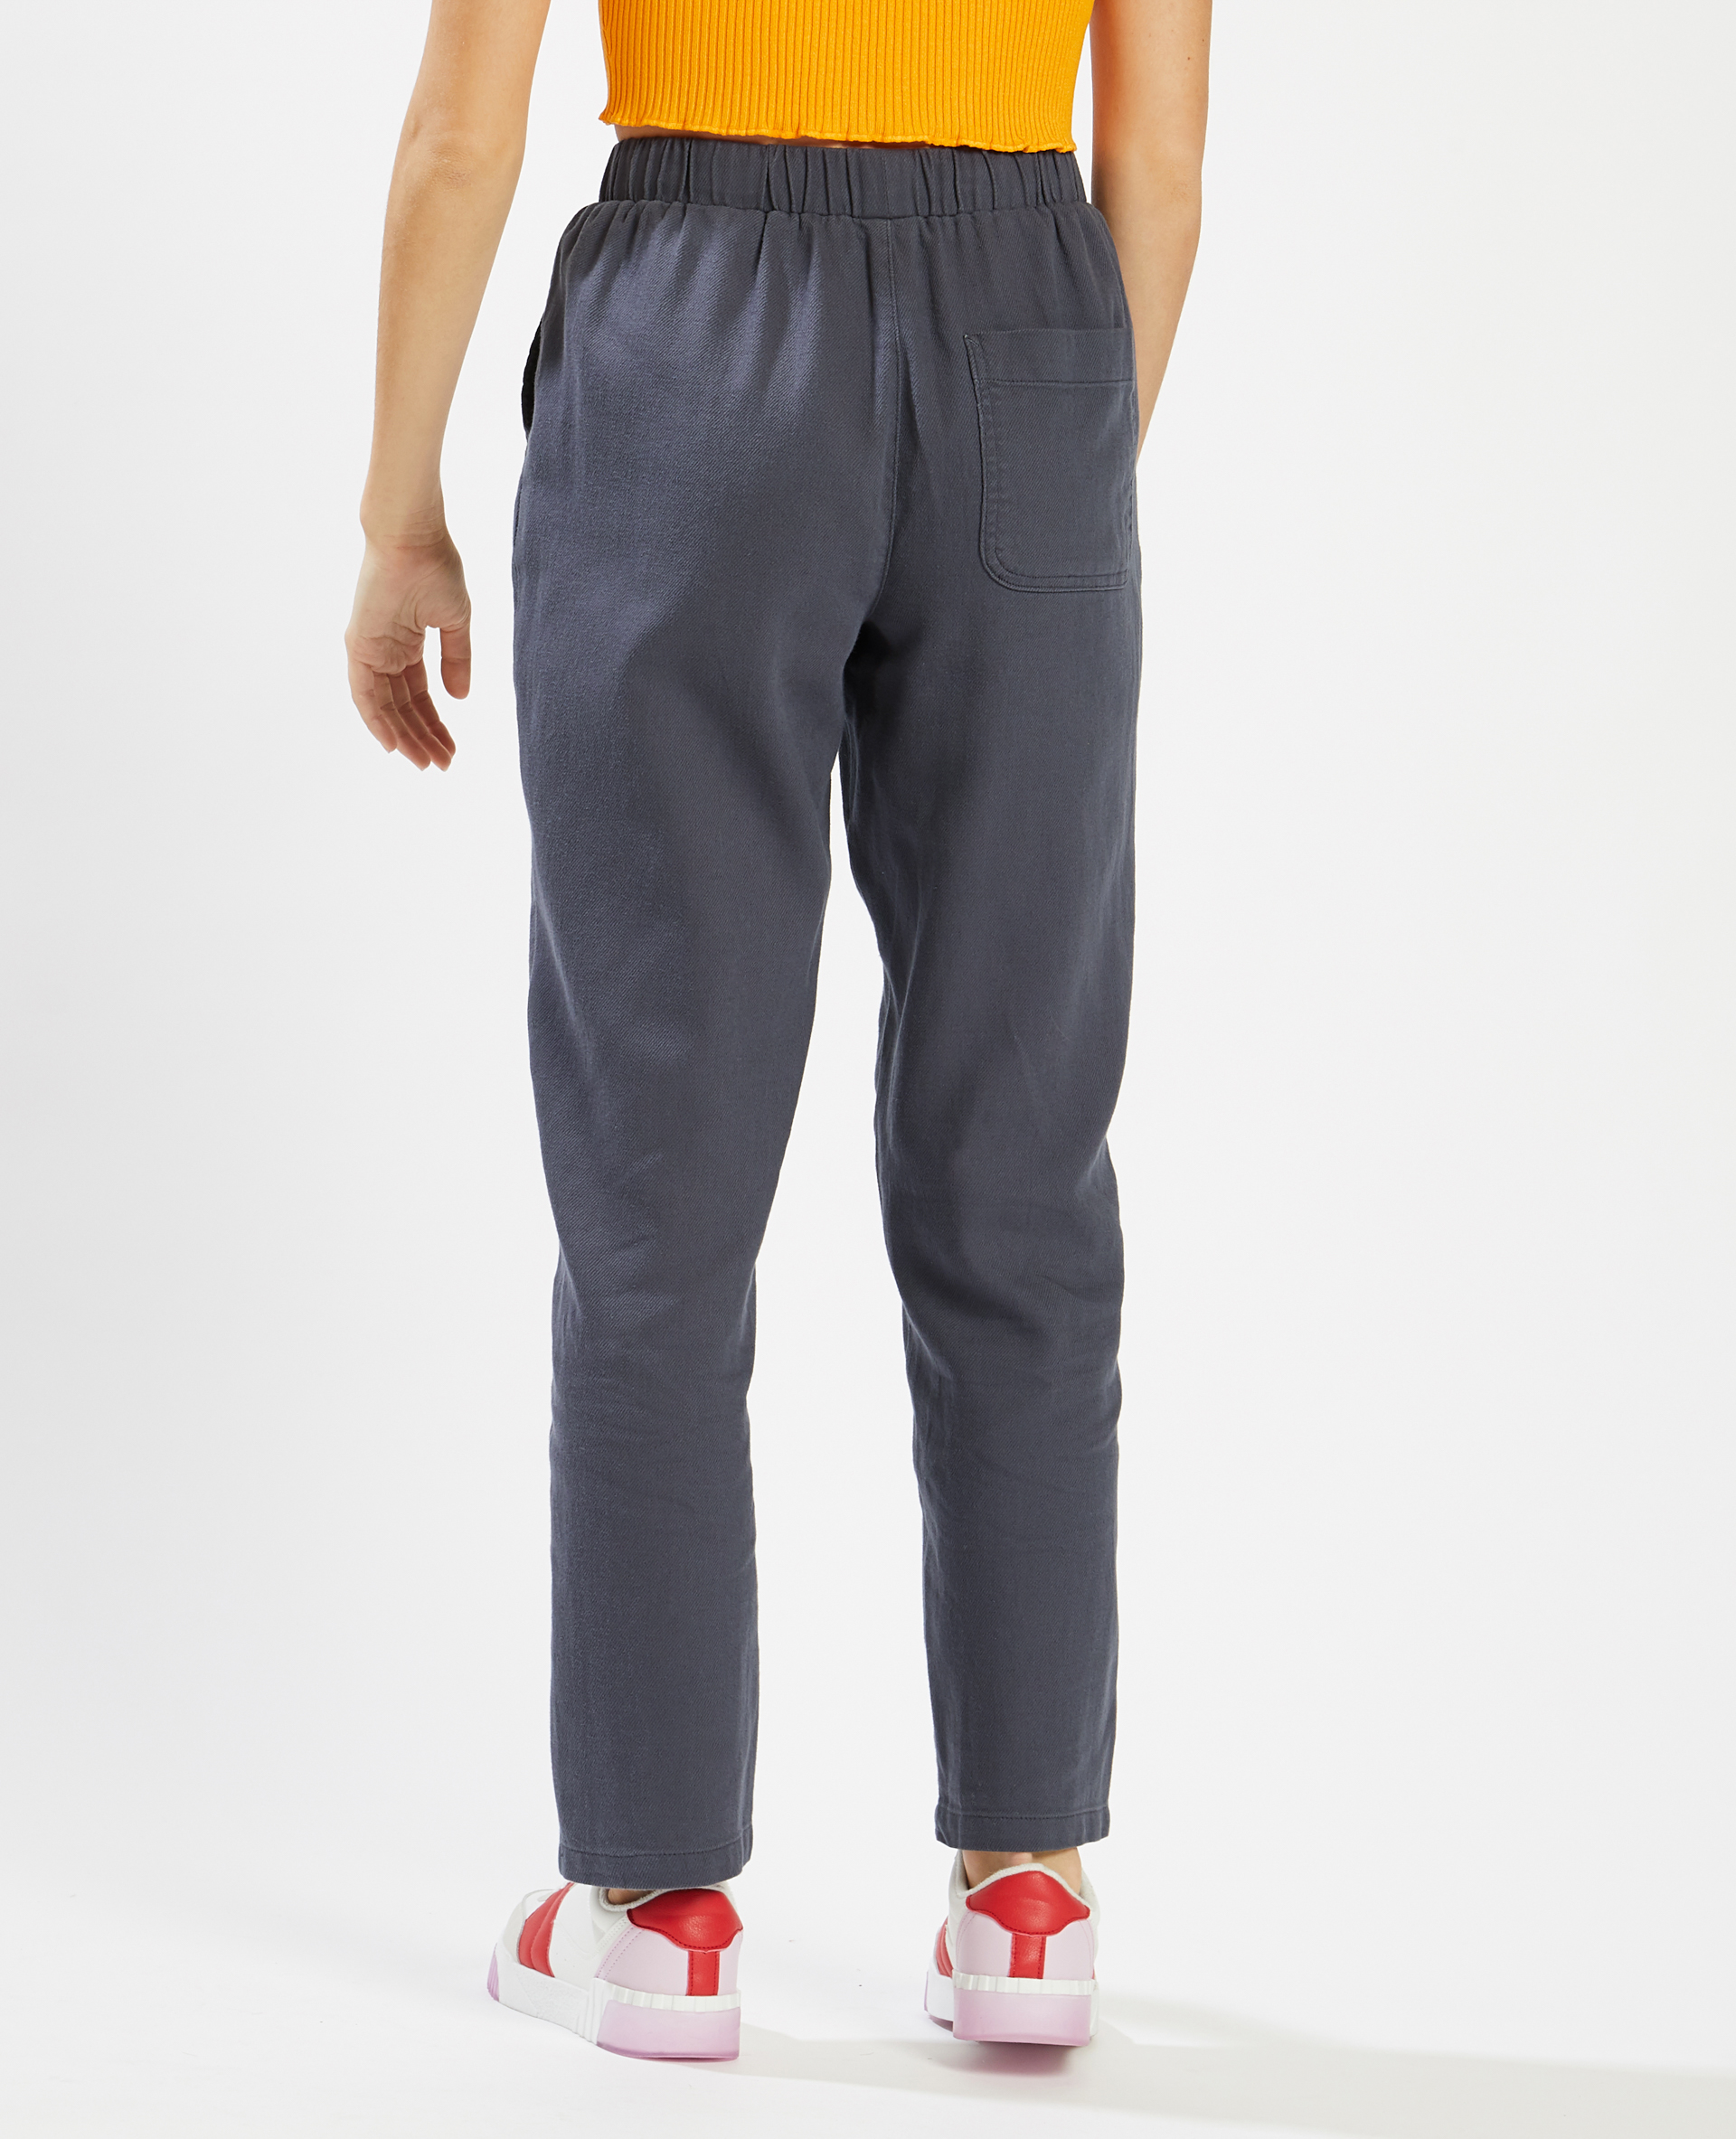 Pantalon taille élastiquée gris foncé - Pimkie